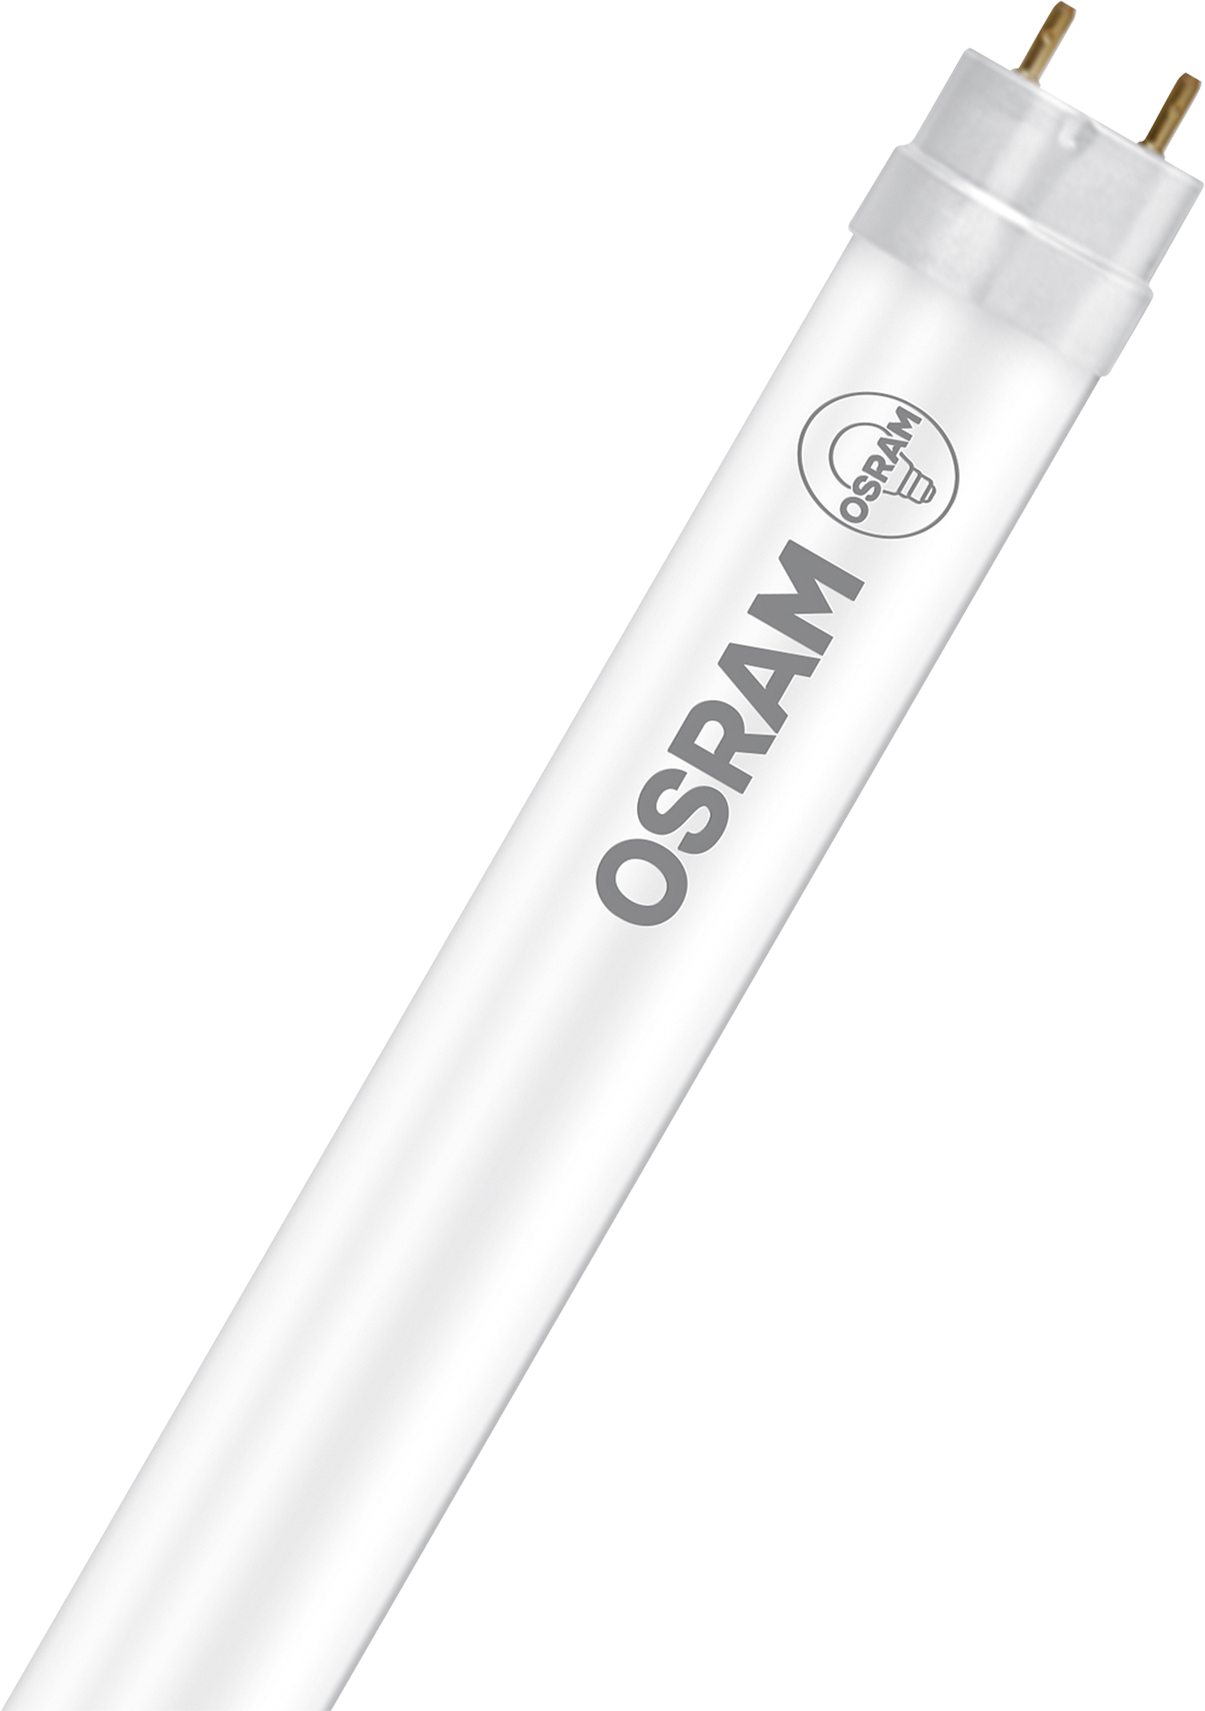 OSRAM LED-Lampe Star Substi T8 G13, 15.0W, 1800lm, Cool White, Ø 26.8mm - Lampen, Leuchten